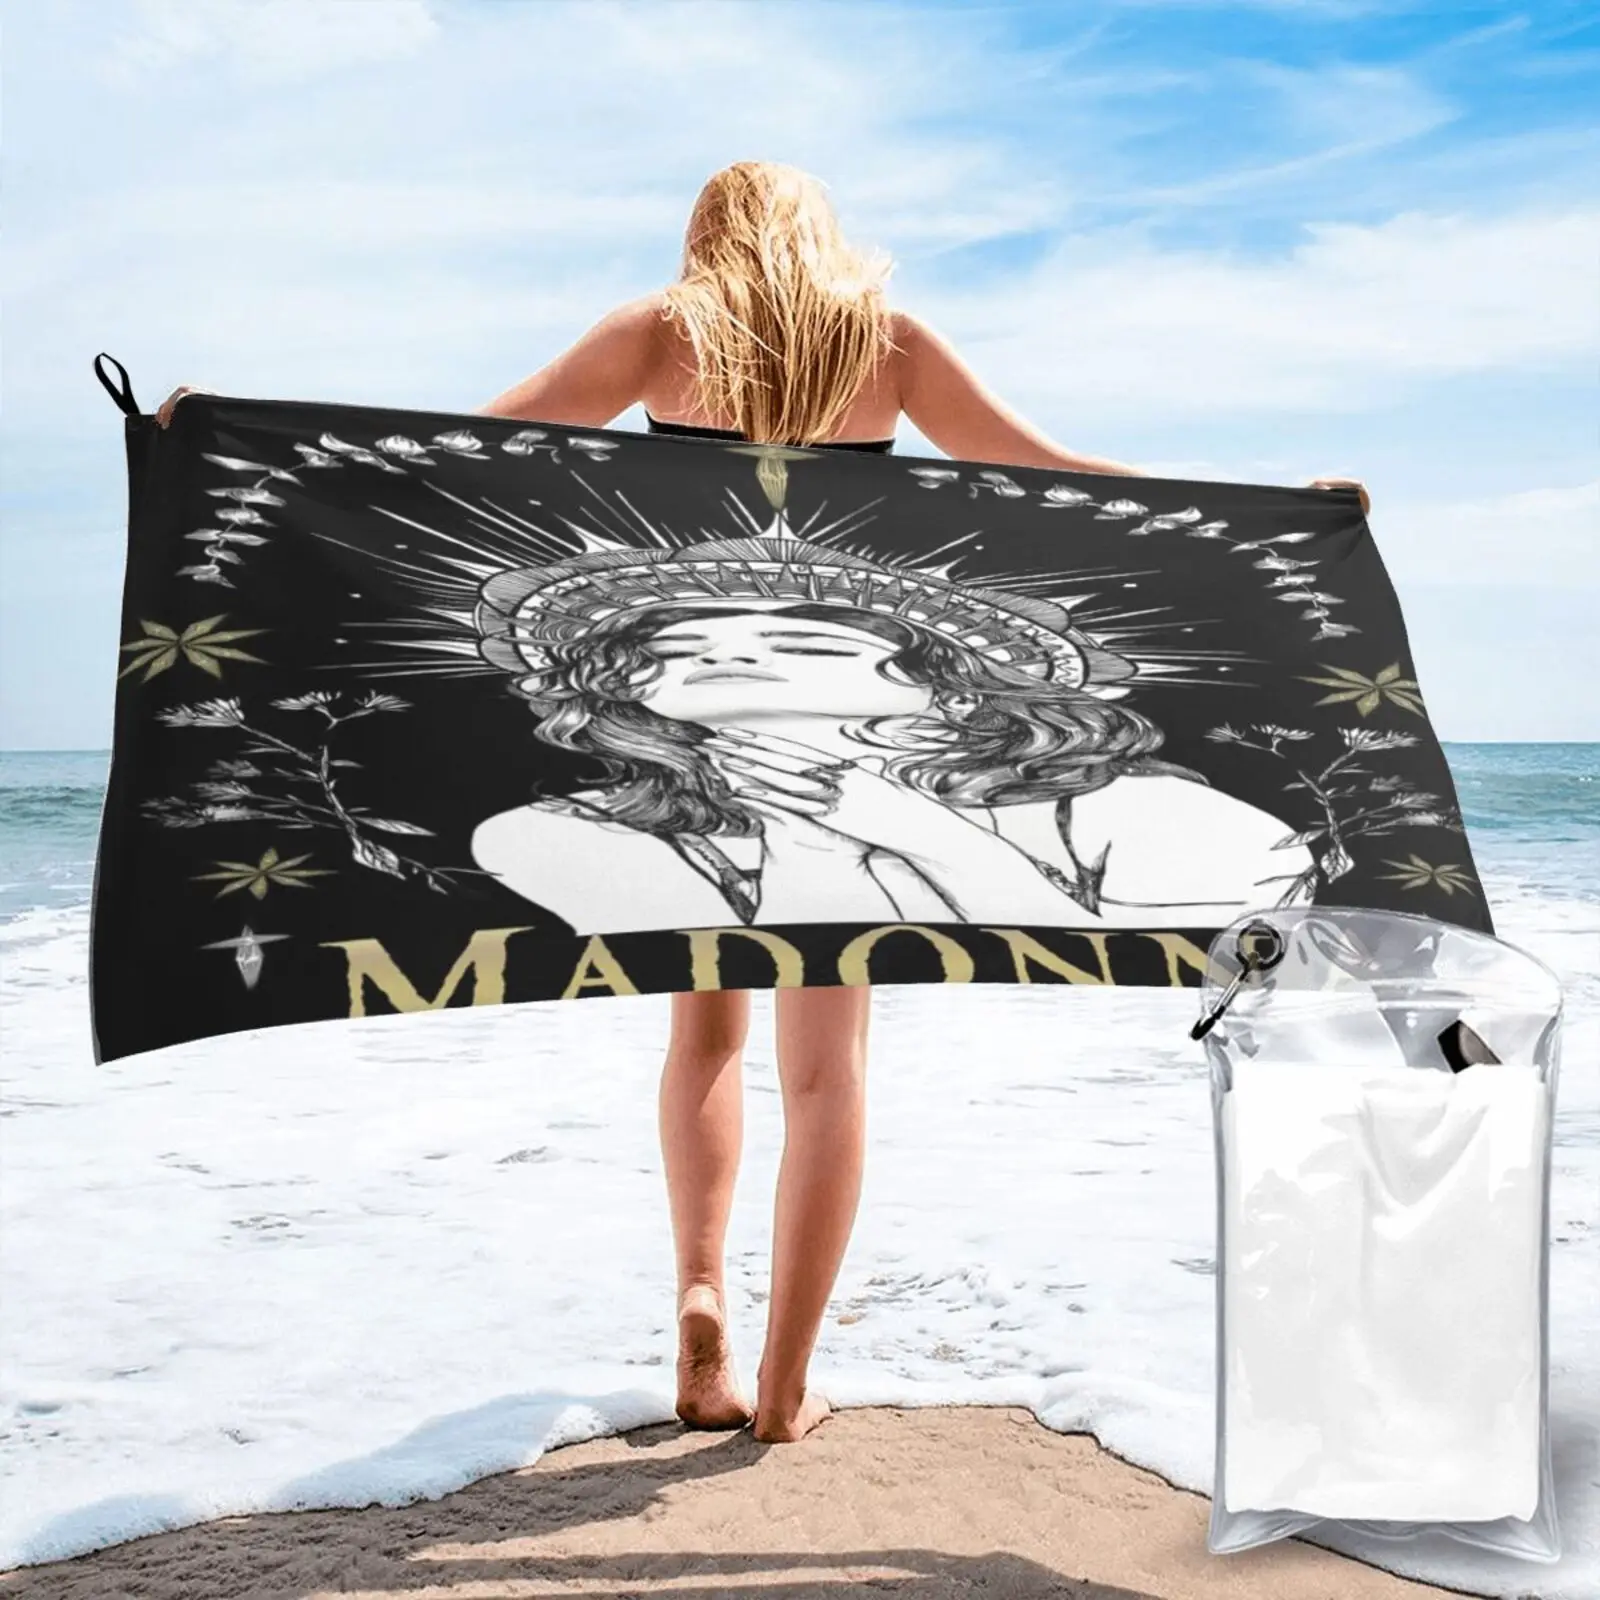 

Пляжное полотенце «Мадонна как Молитва» Re F727, пляжное полотенце, пляжный коврик, пляжная одежда, Большое банное полотенце, кухонное полотен...